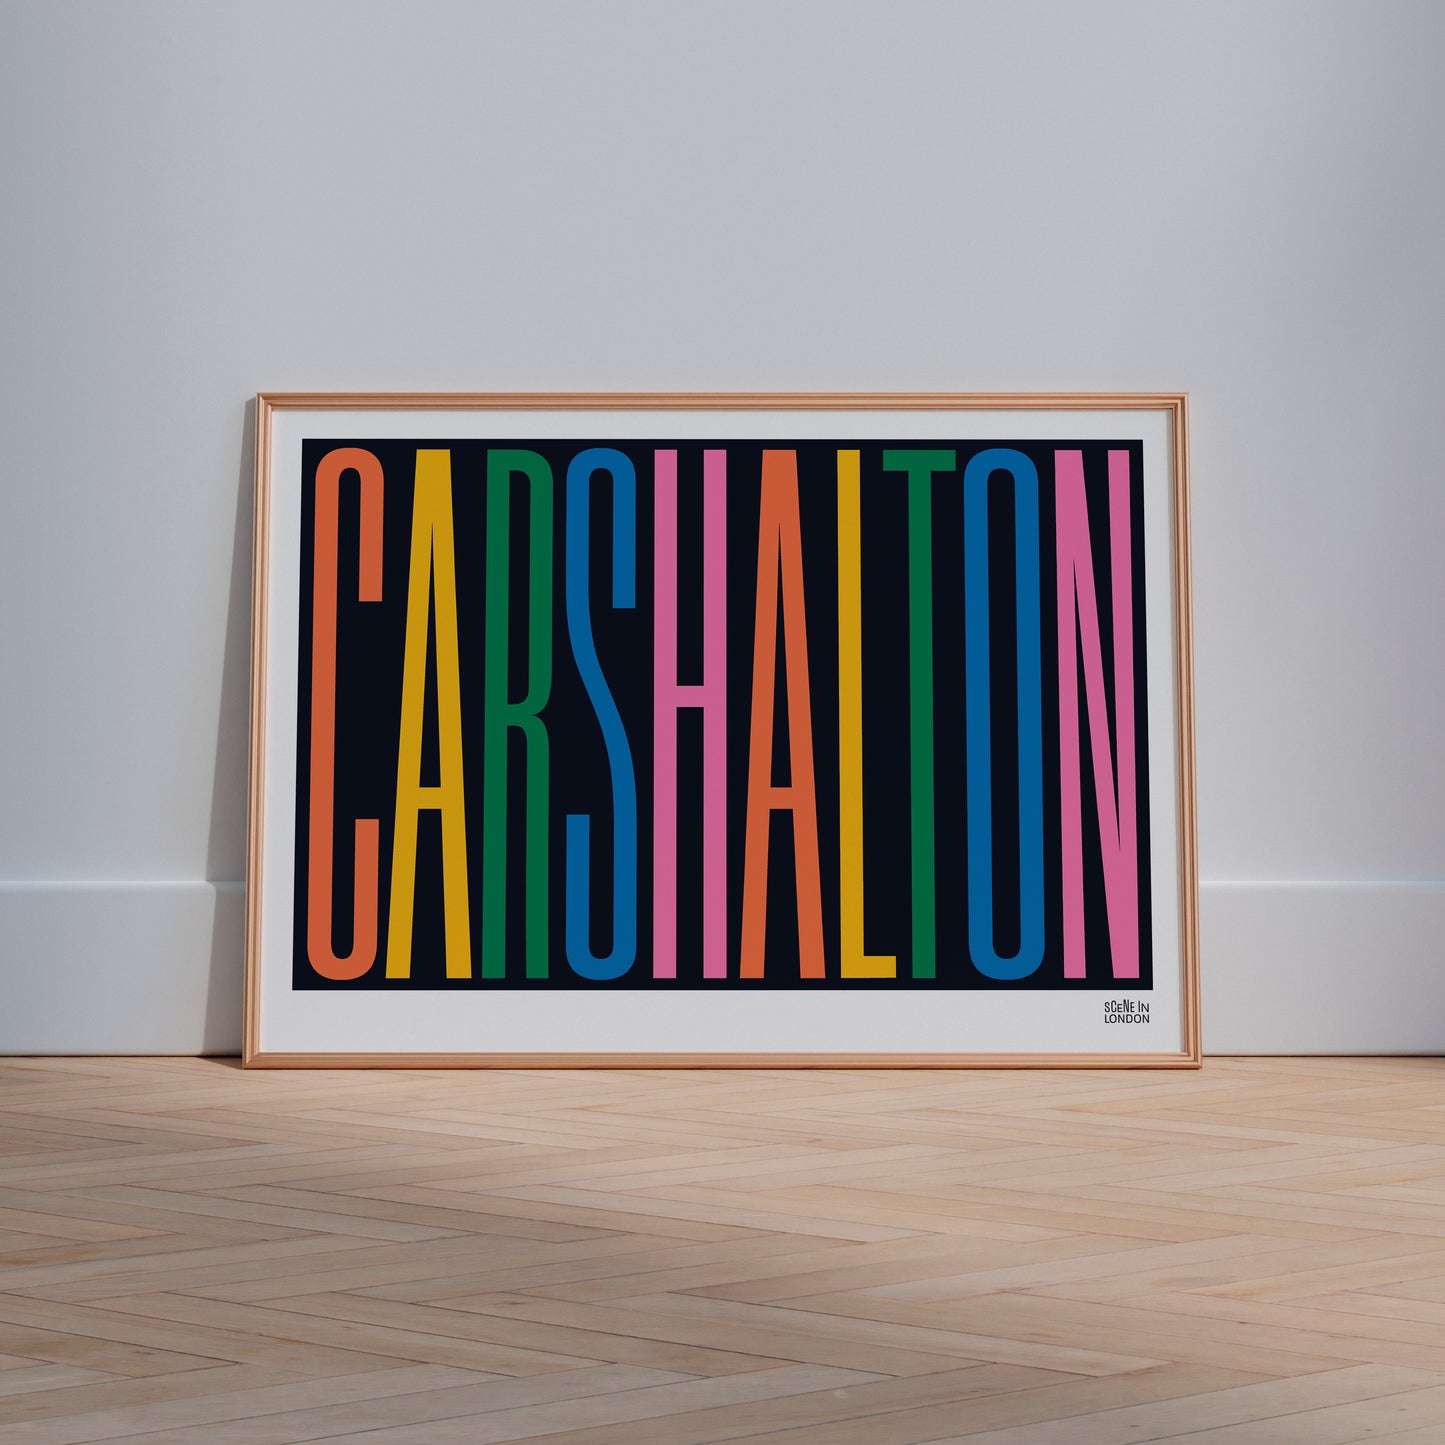 Carshalton Art in Frame